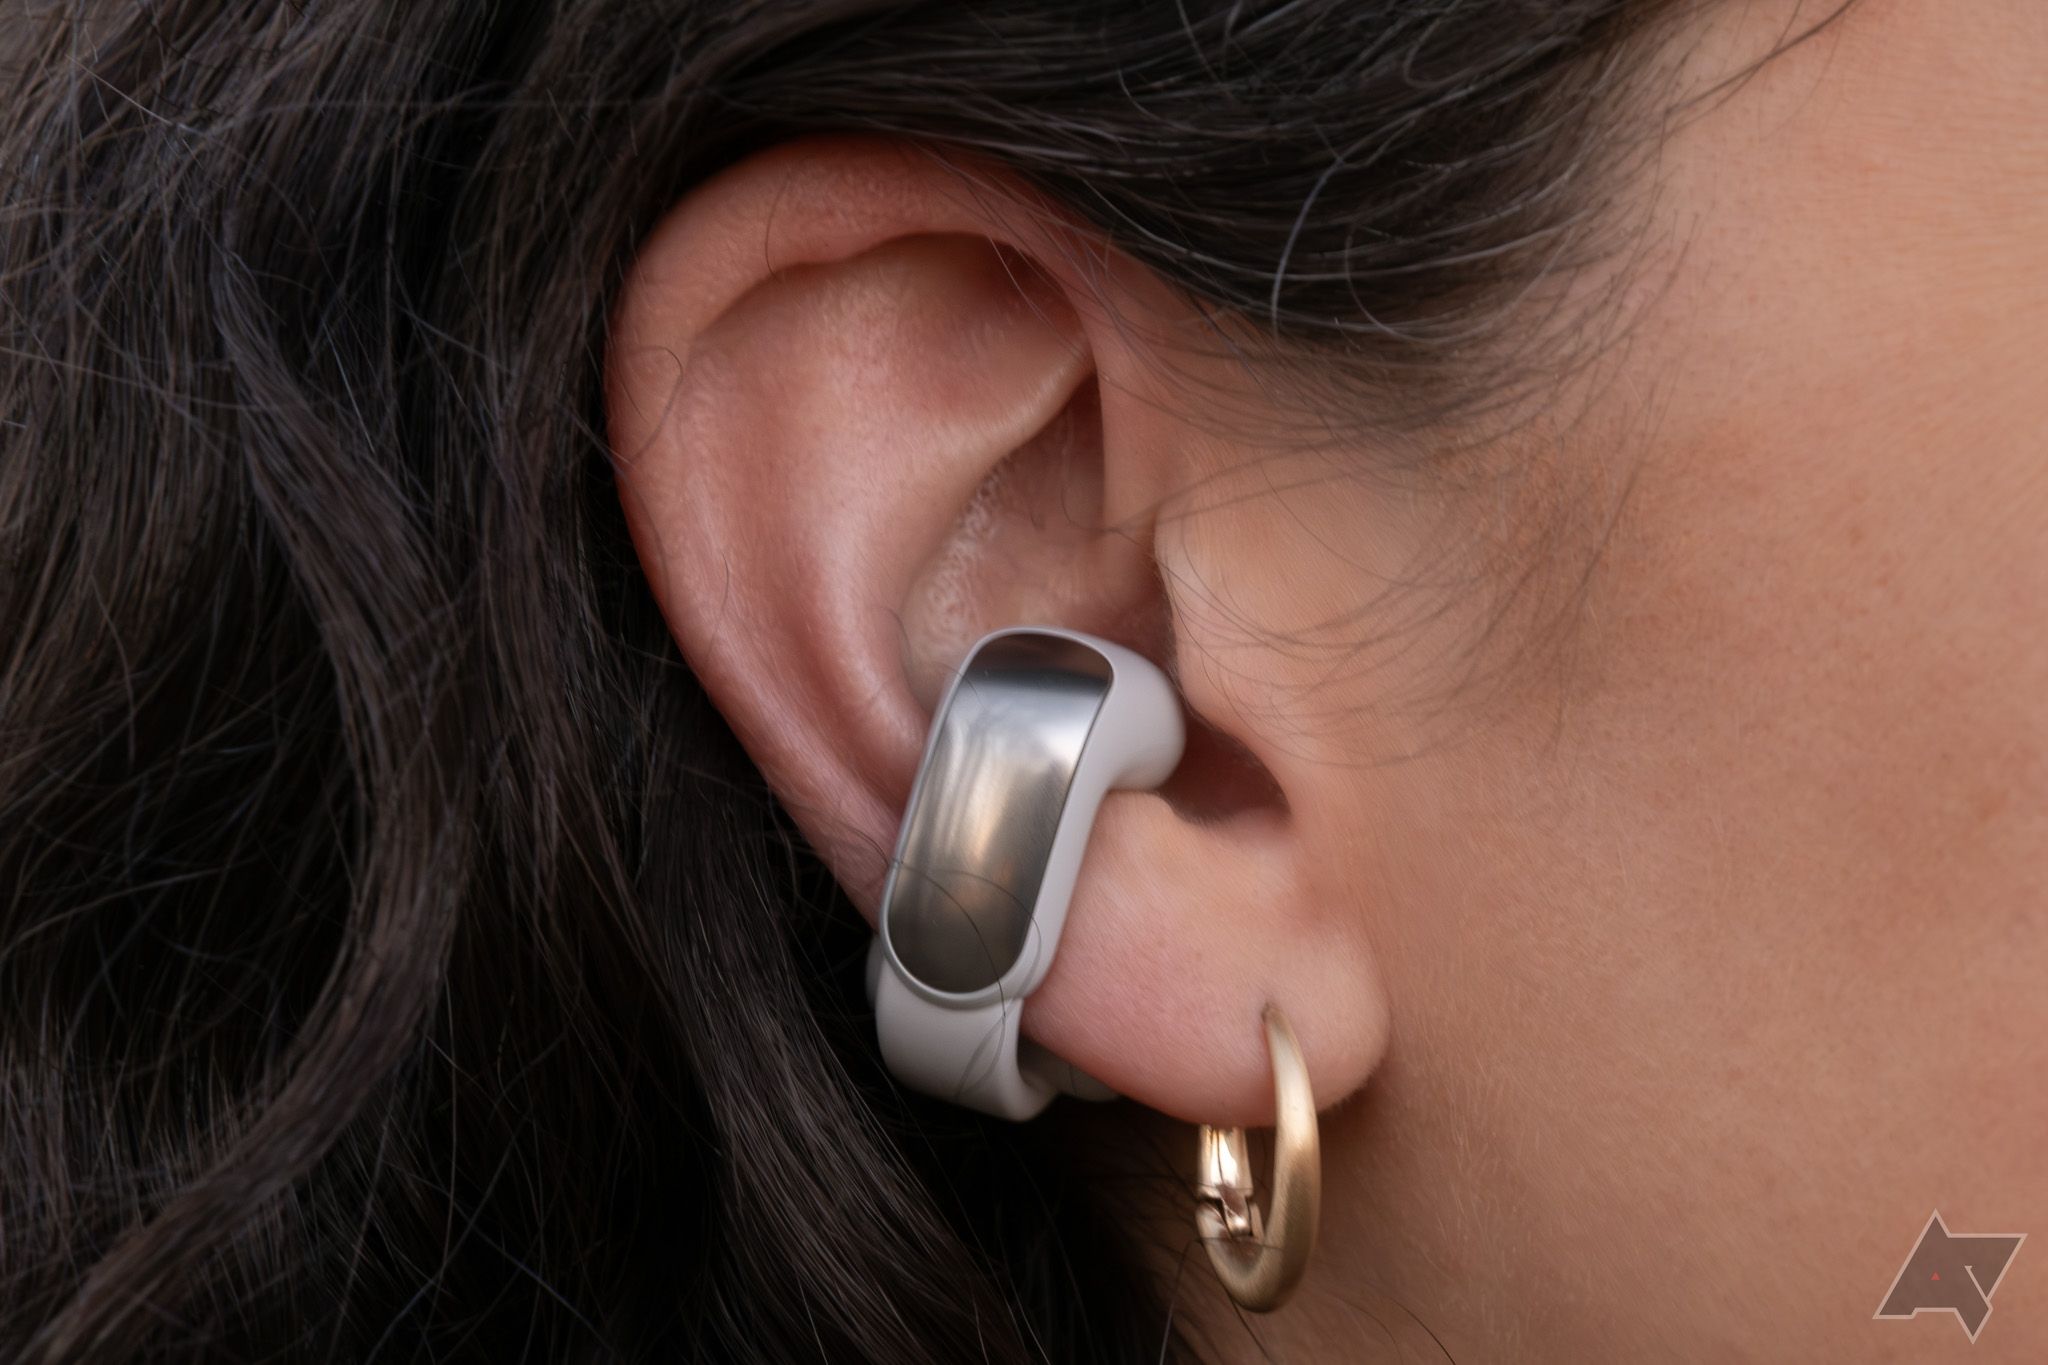 Um fone de ouvido Bose Ultra Open em uma orelha.